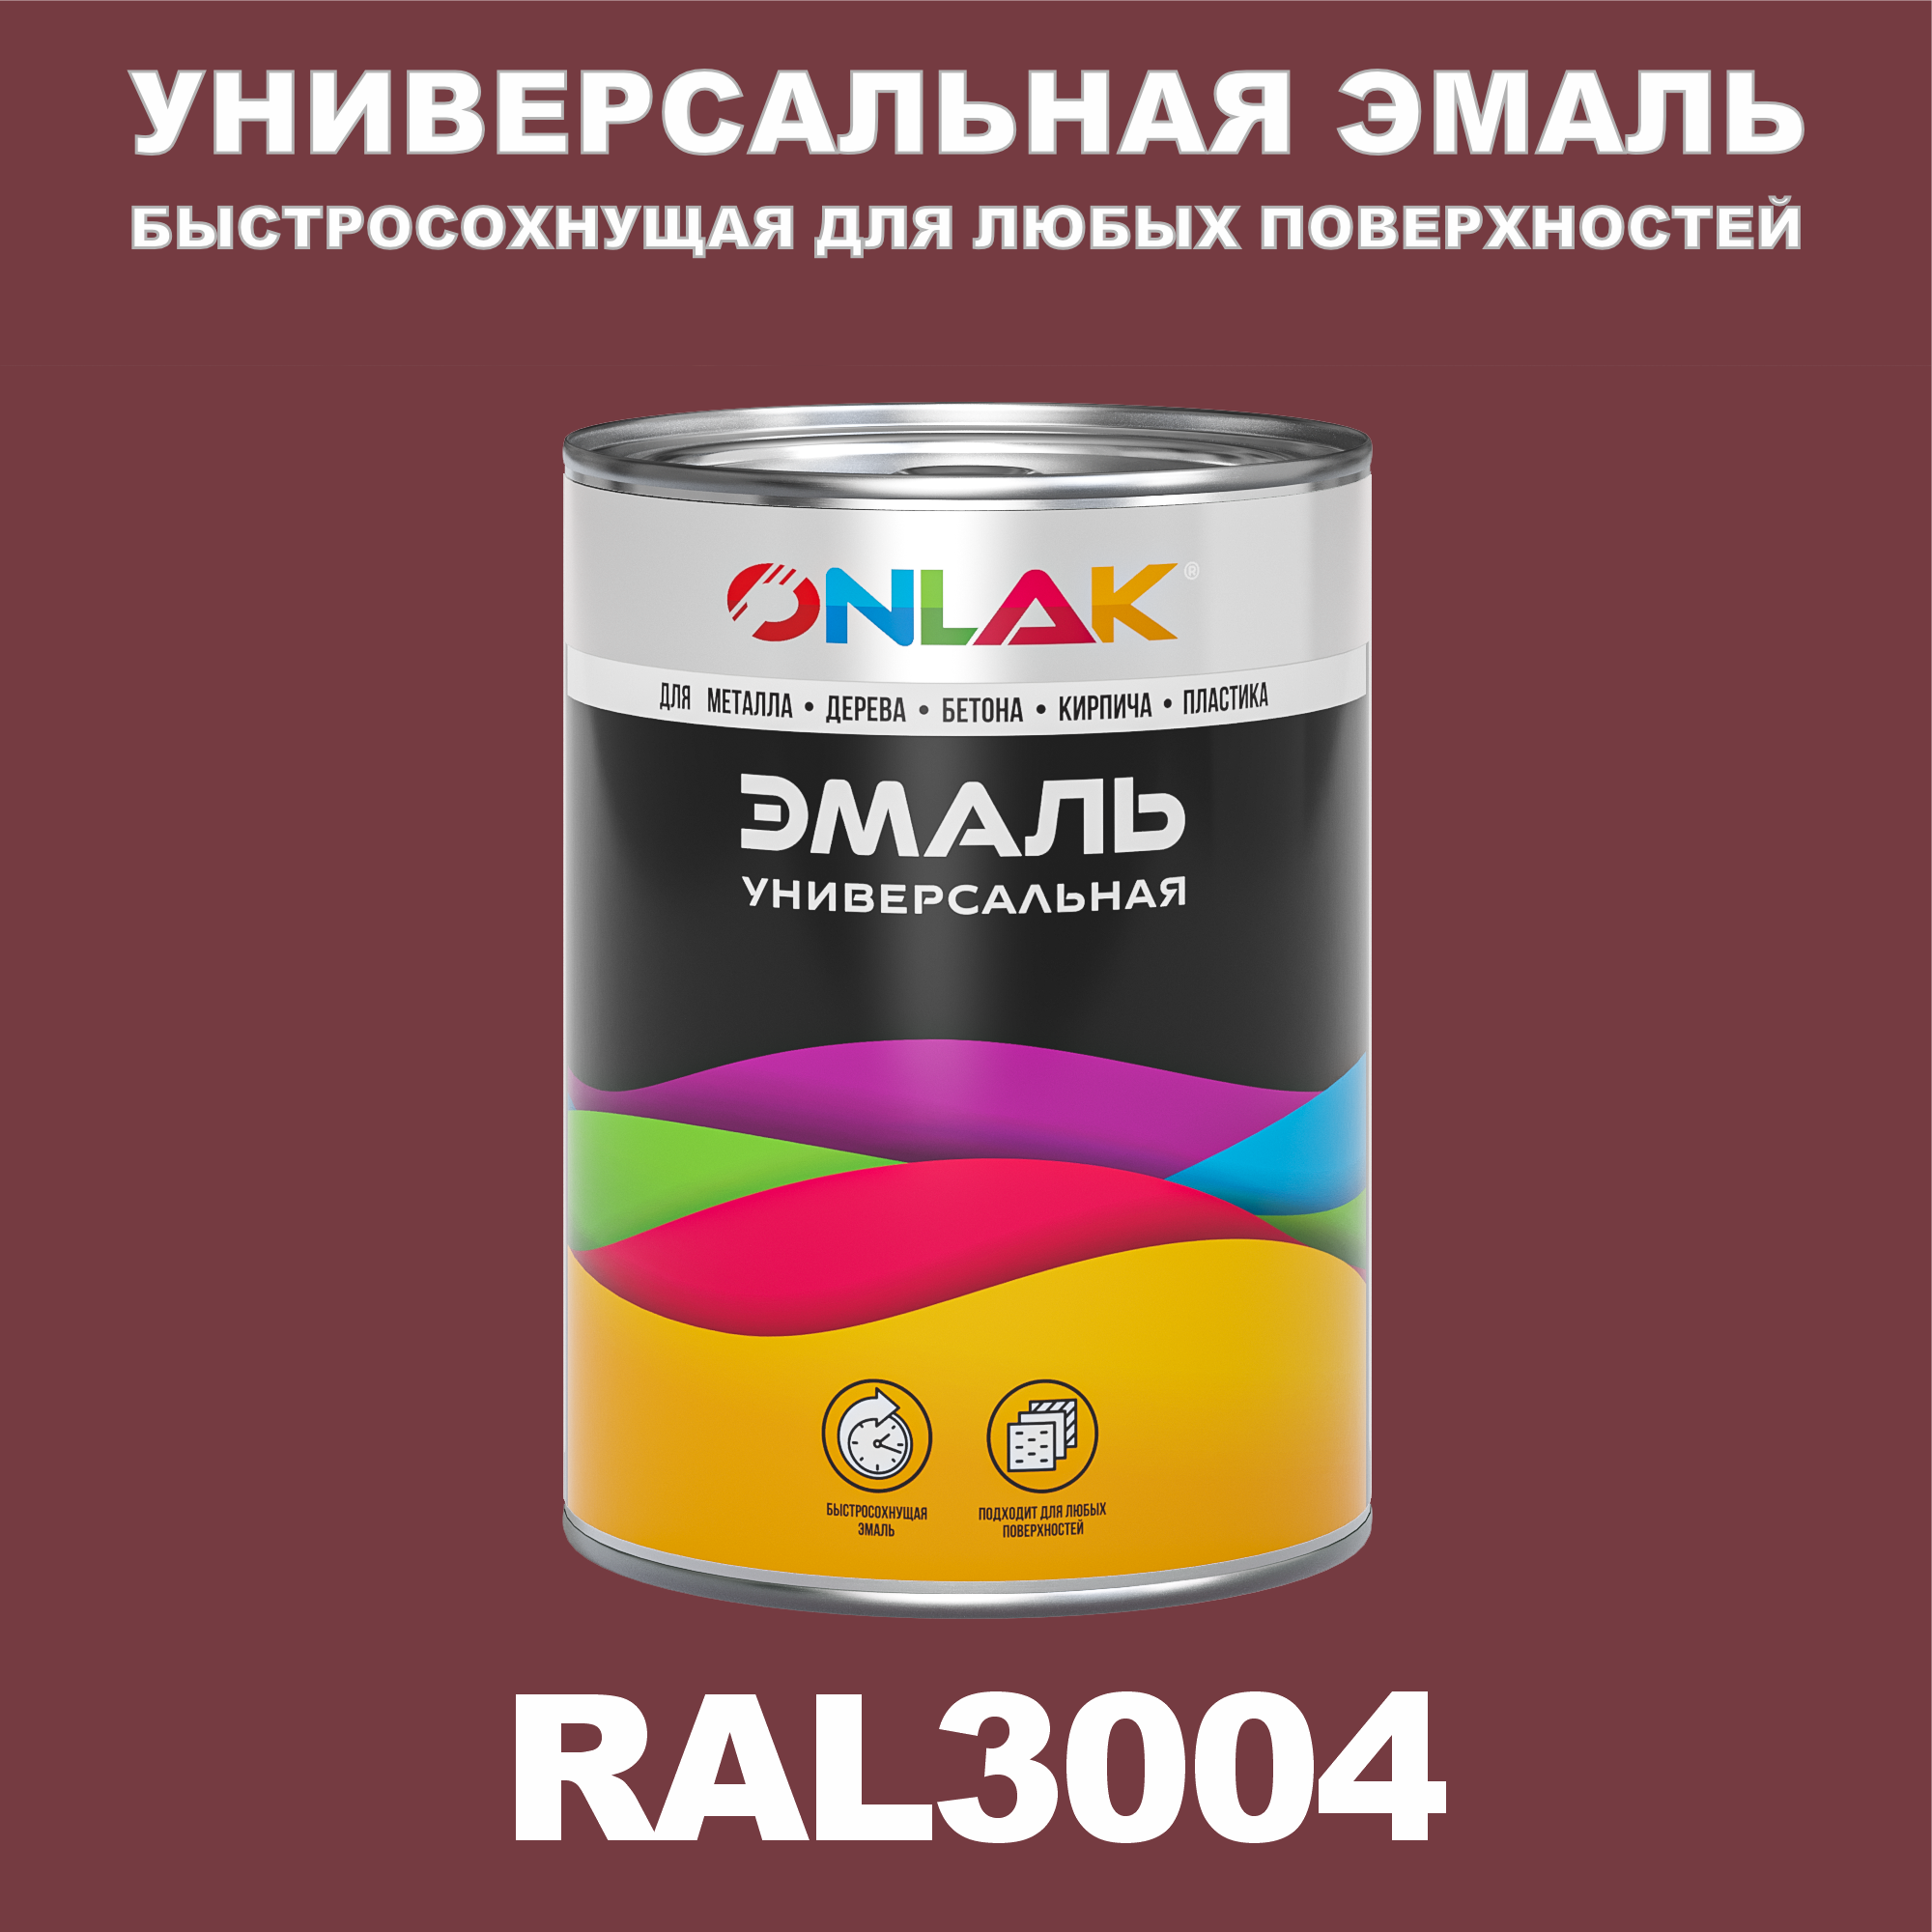 Эмаль ONLAK Универсальная RAL3004 по металлу по ржавчине для дерева бетона пластика напиток сокосодержащий santal красный сицилийский апельсин 1 литр